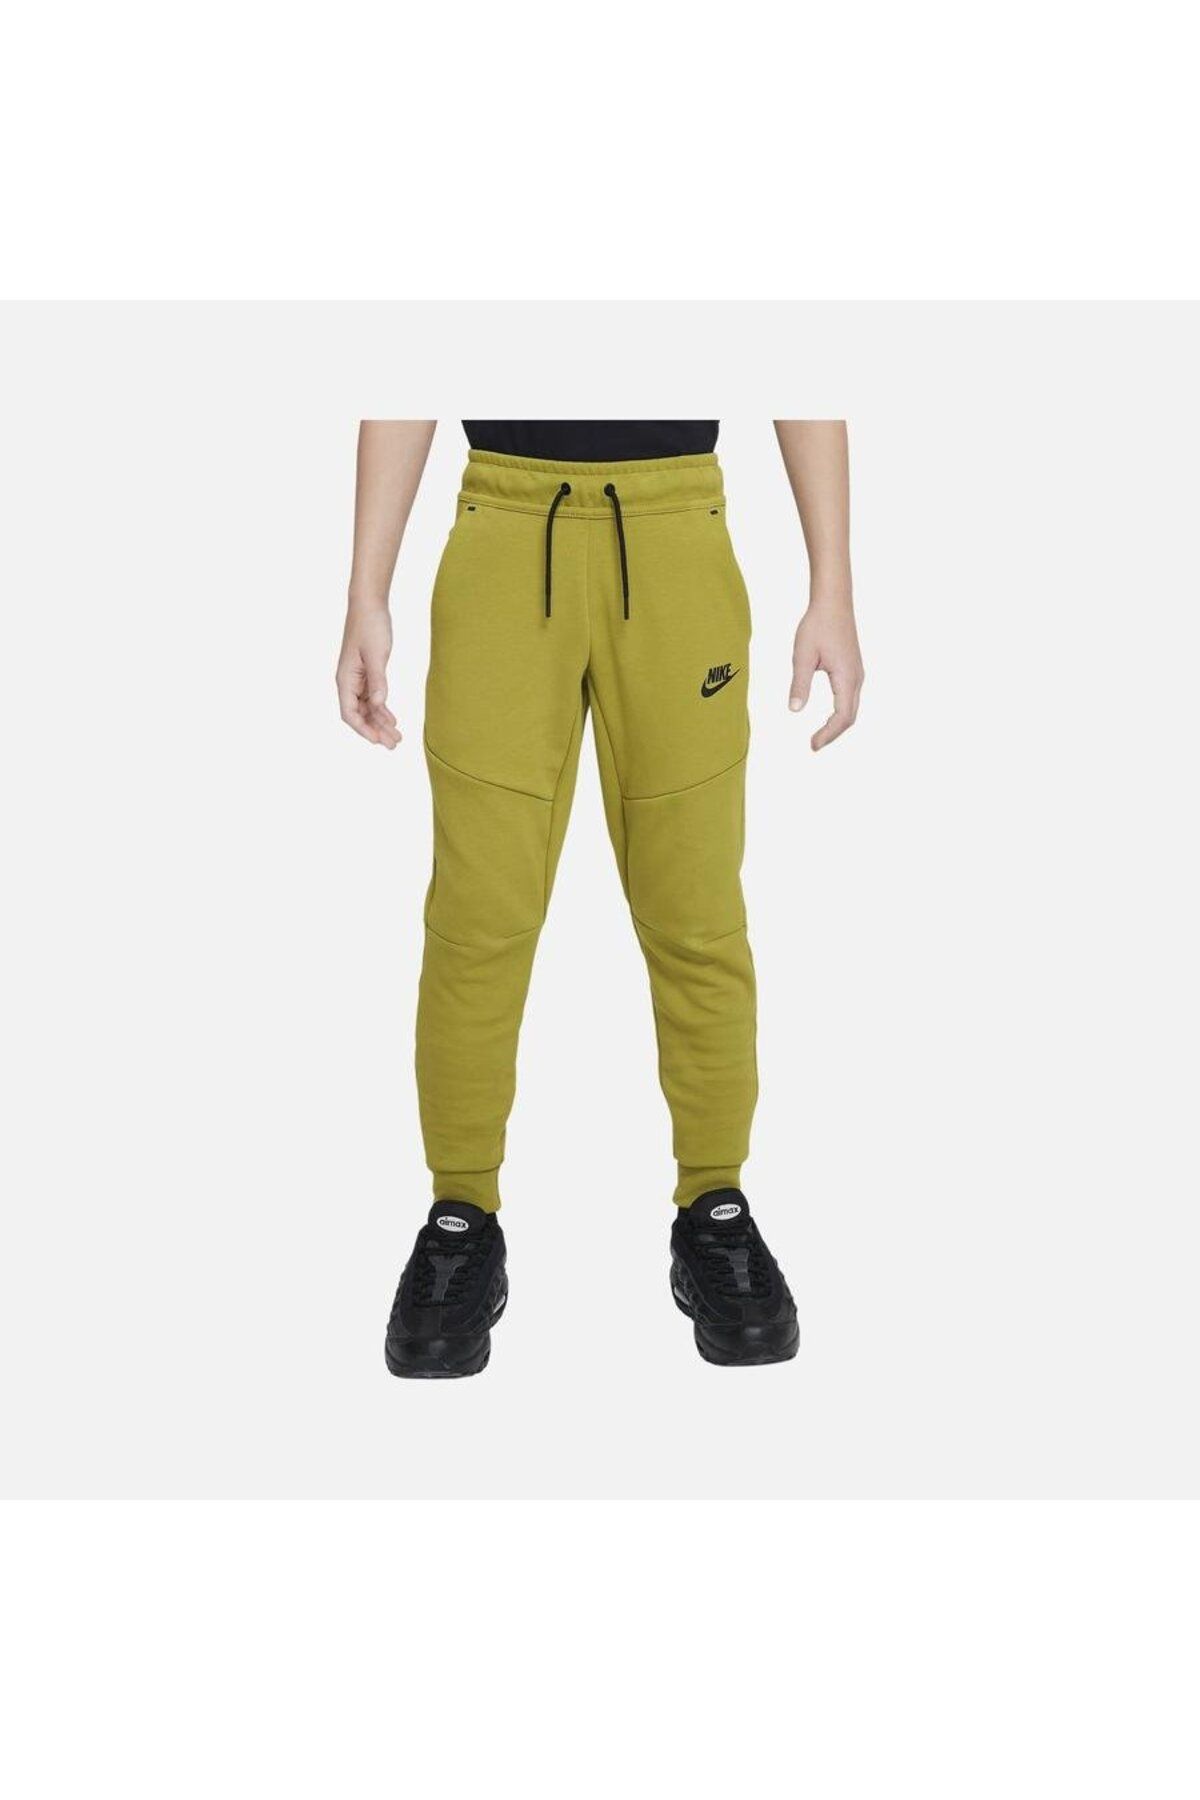 Nike Sportswear Tech Fleece Trousers (Boys') Çocuk Eşofman Altı CU9213-390